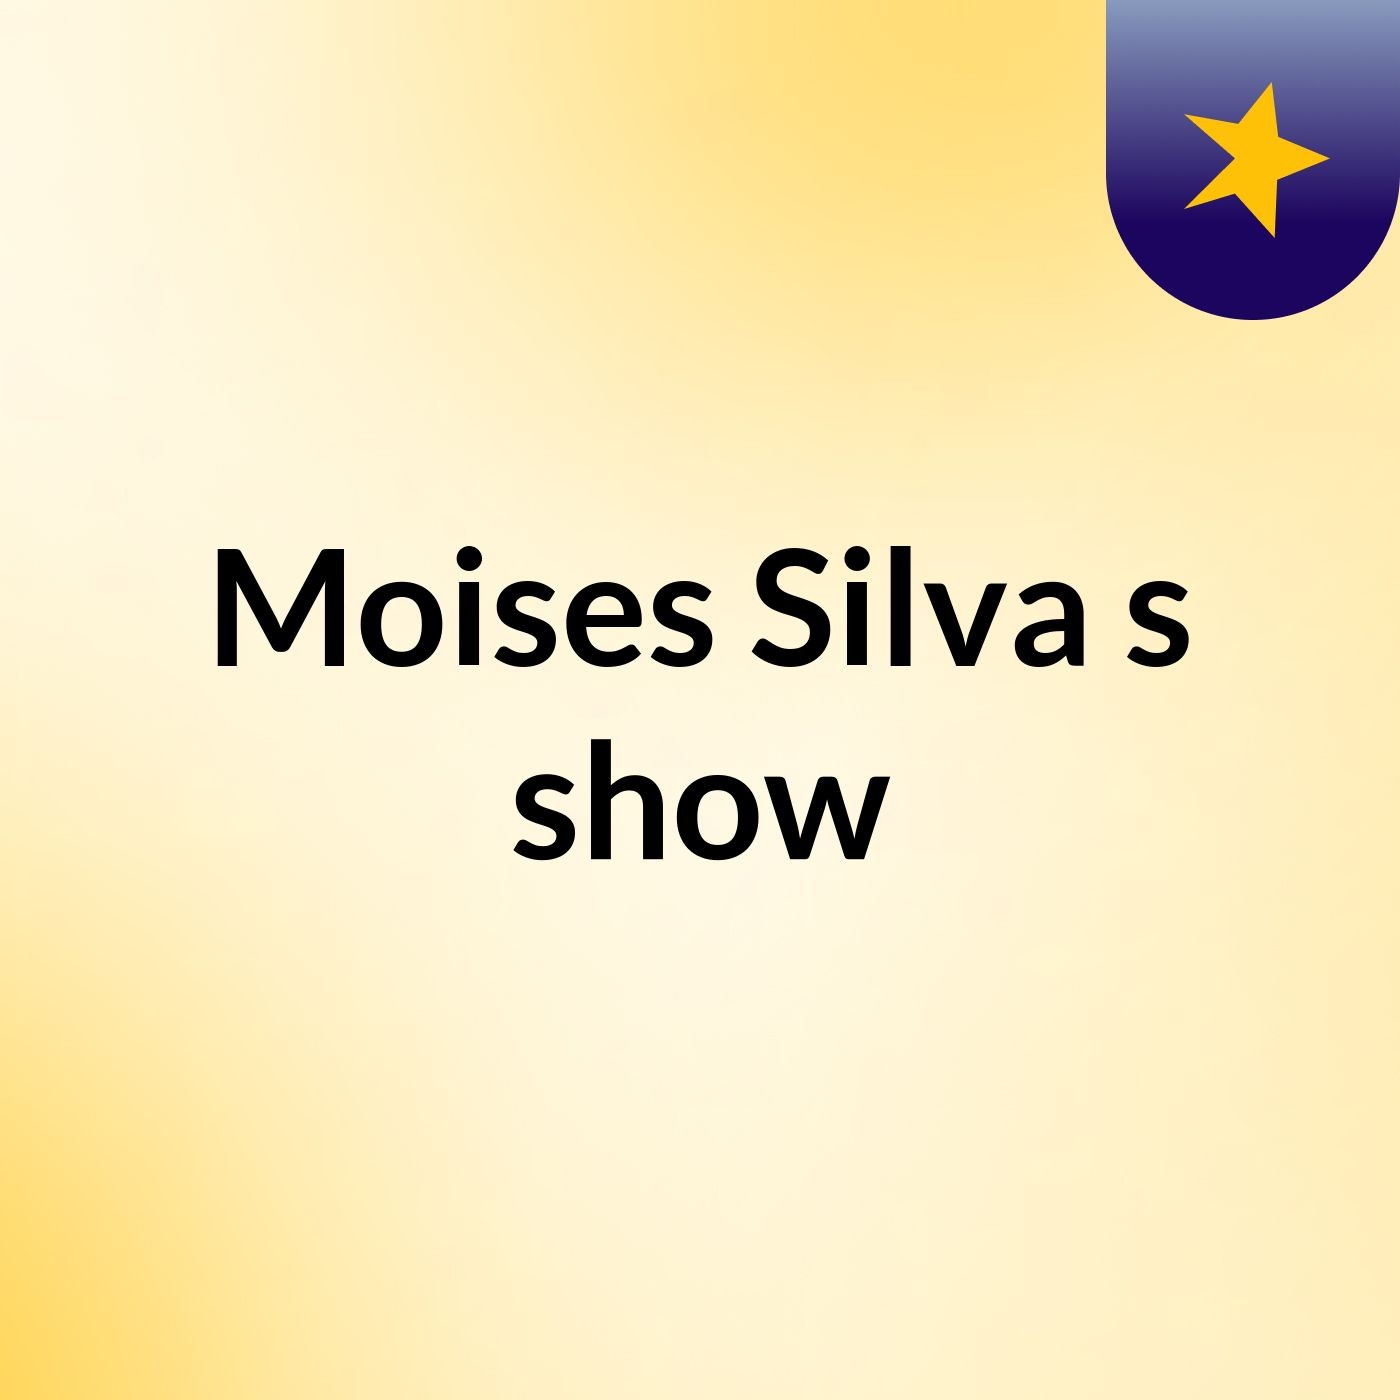 Moises Silva's show